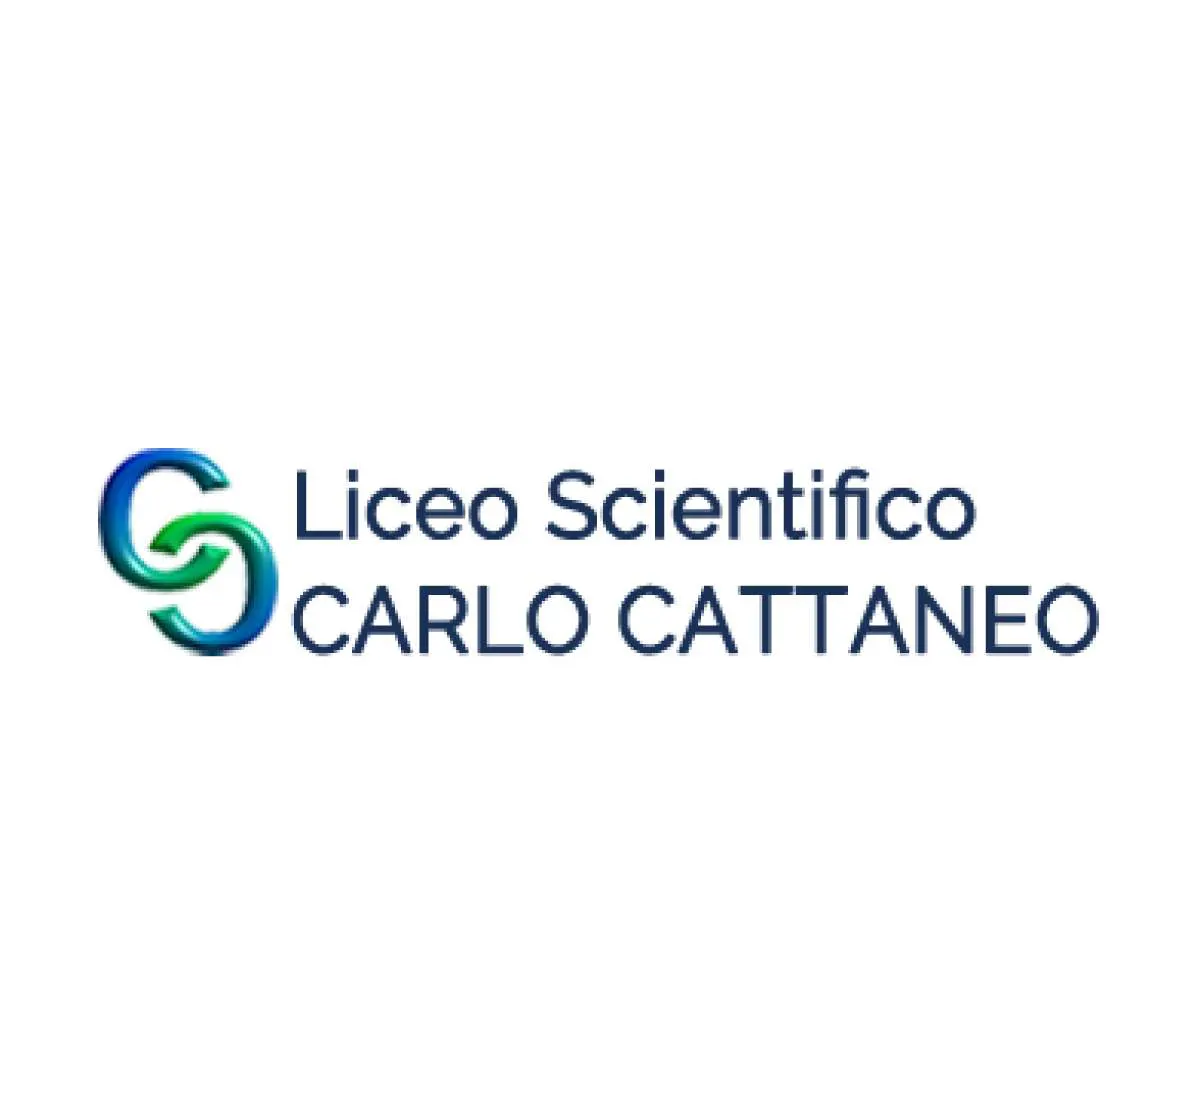 Liceo Scientifico Carlo Cattaneo